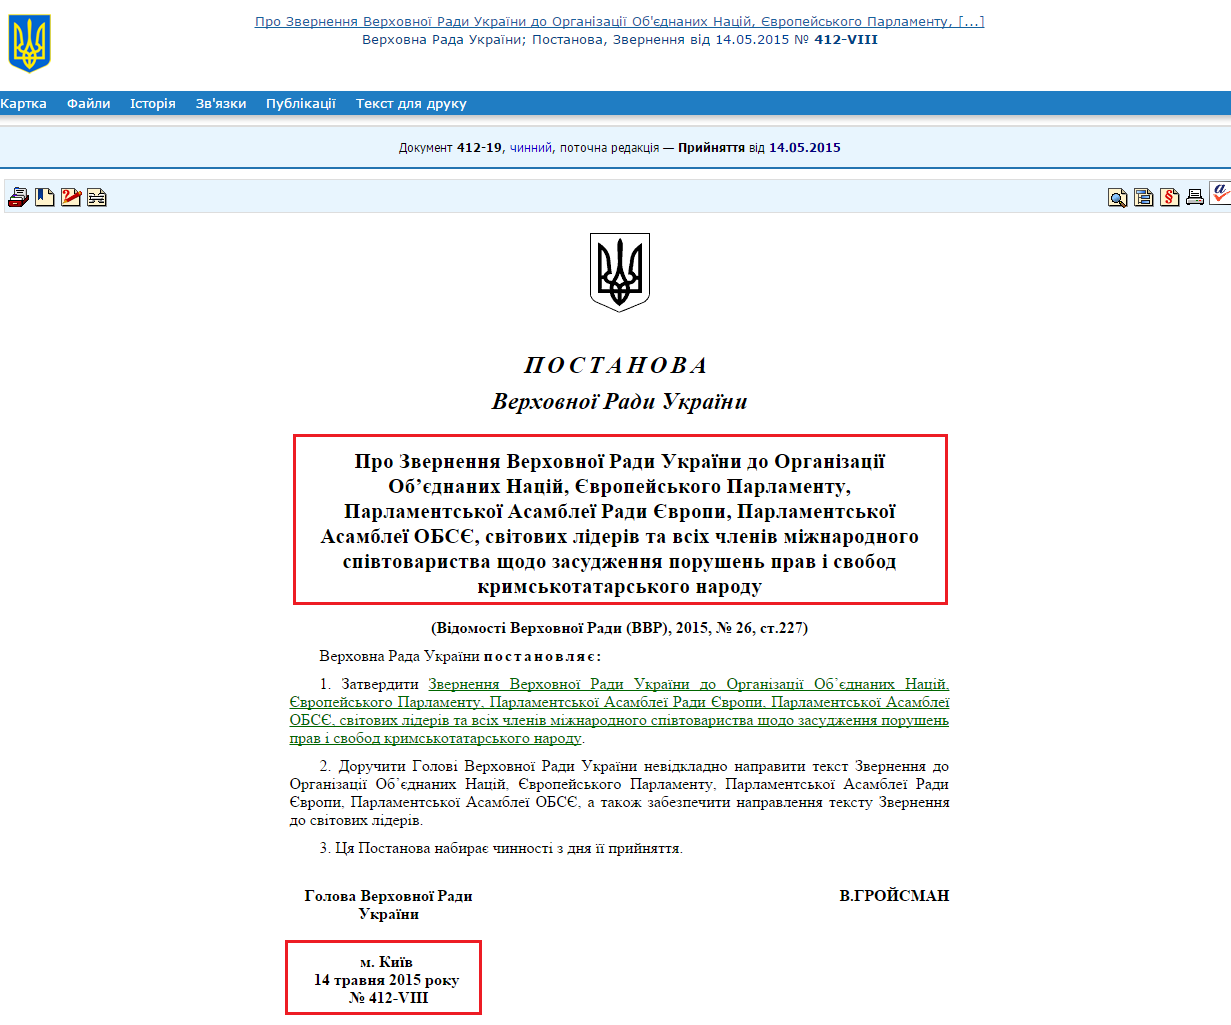 http://zakon5.rada.gov.ua/laws/show/412-19